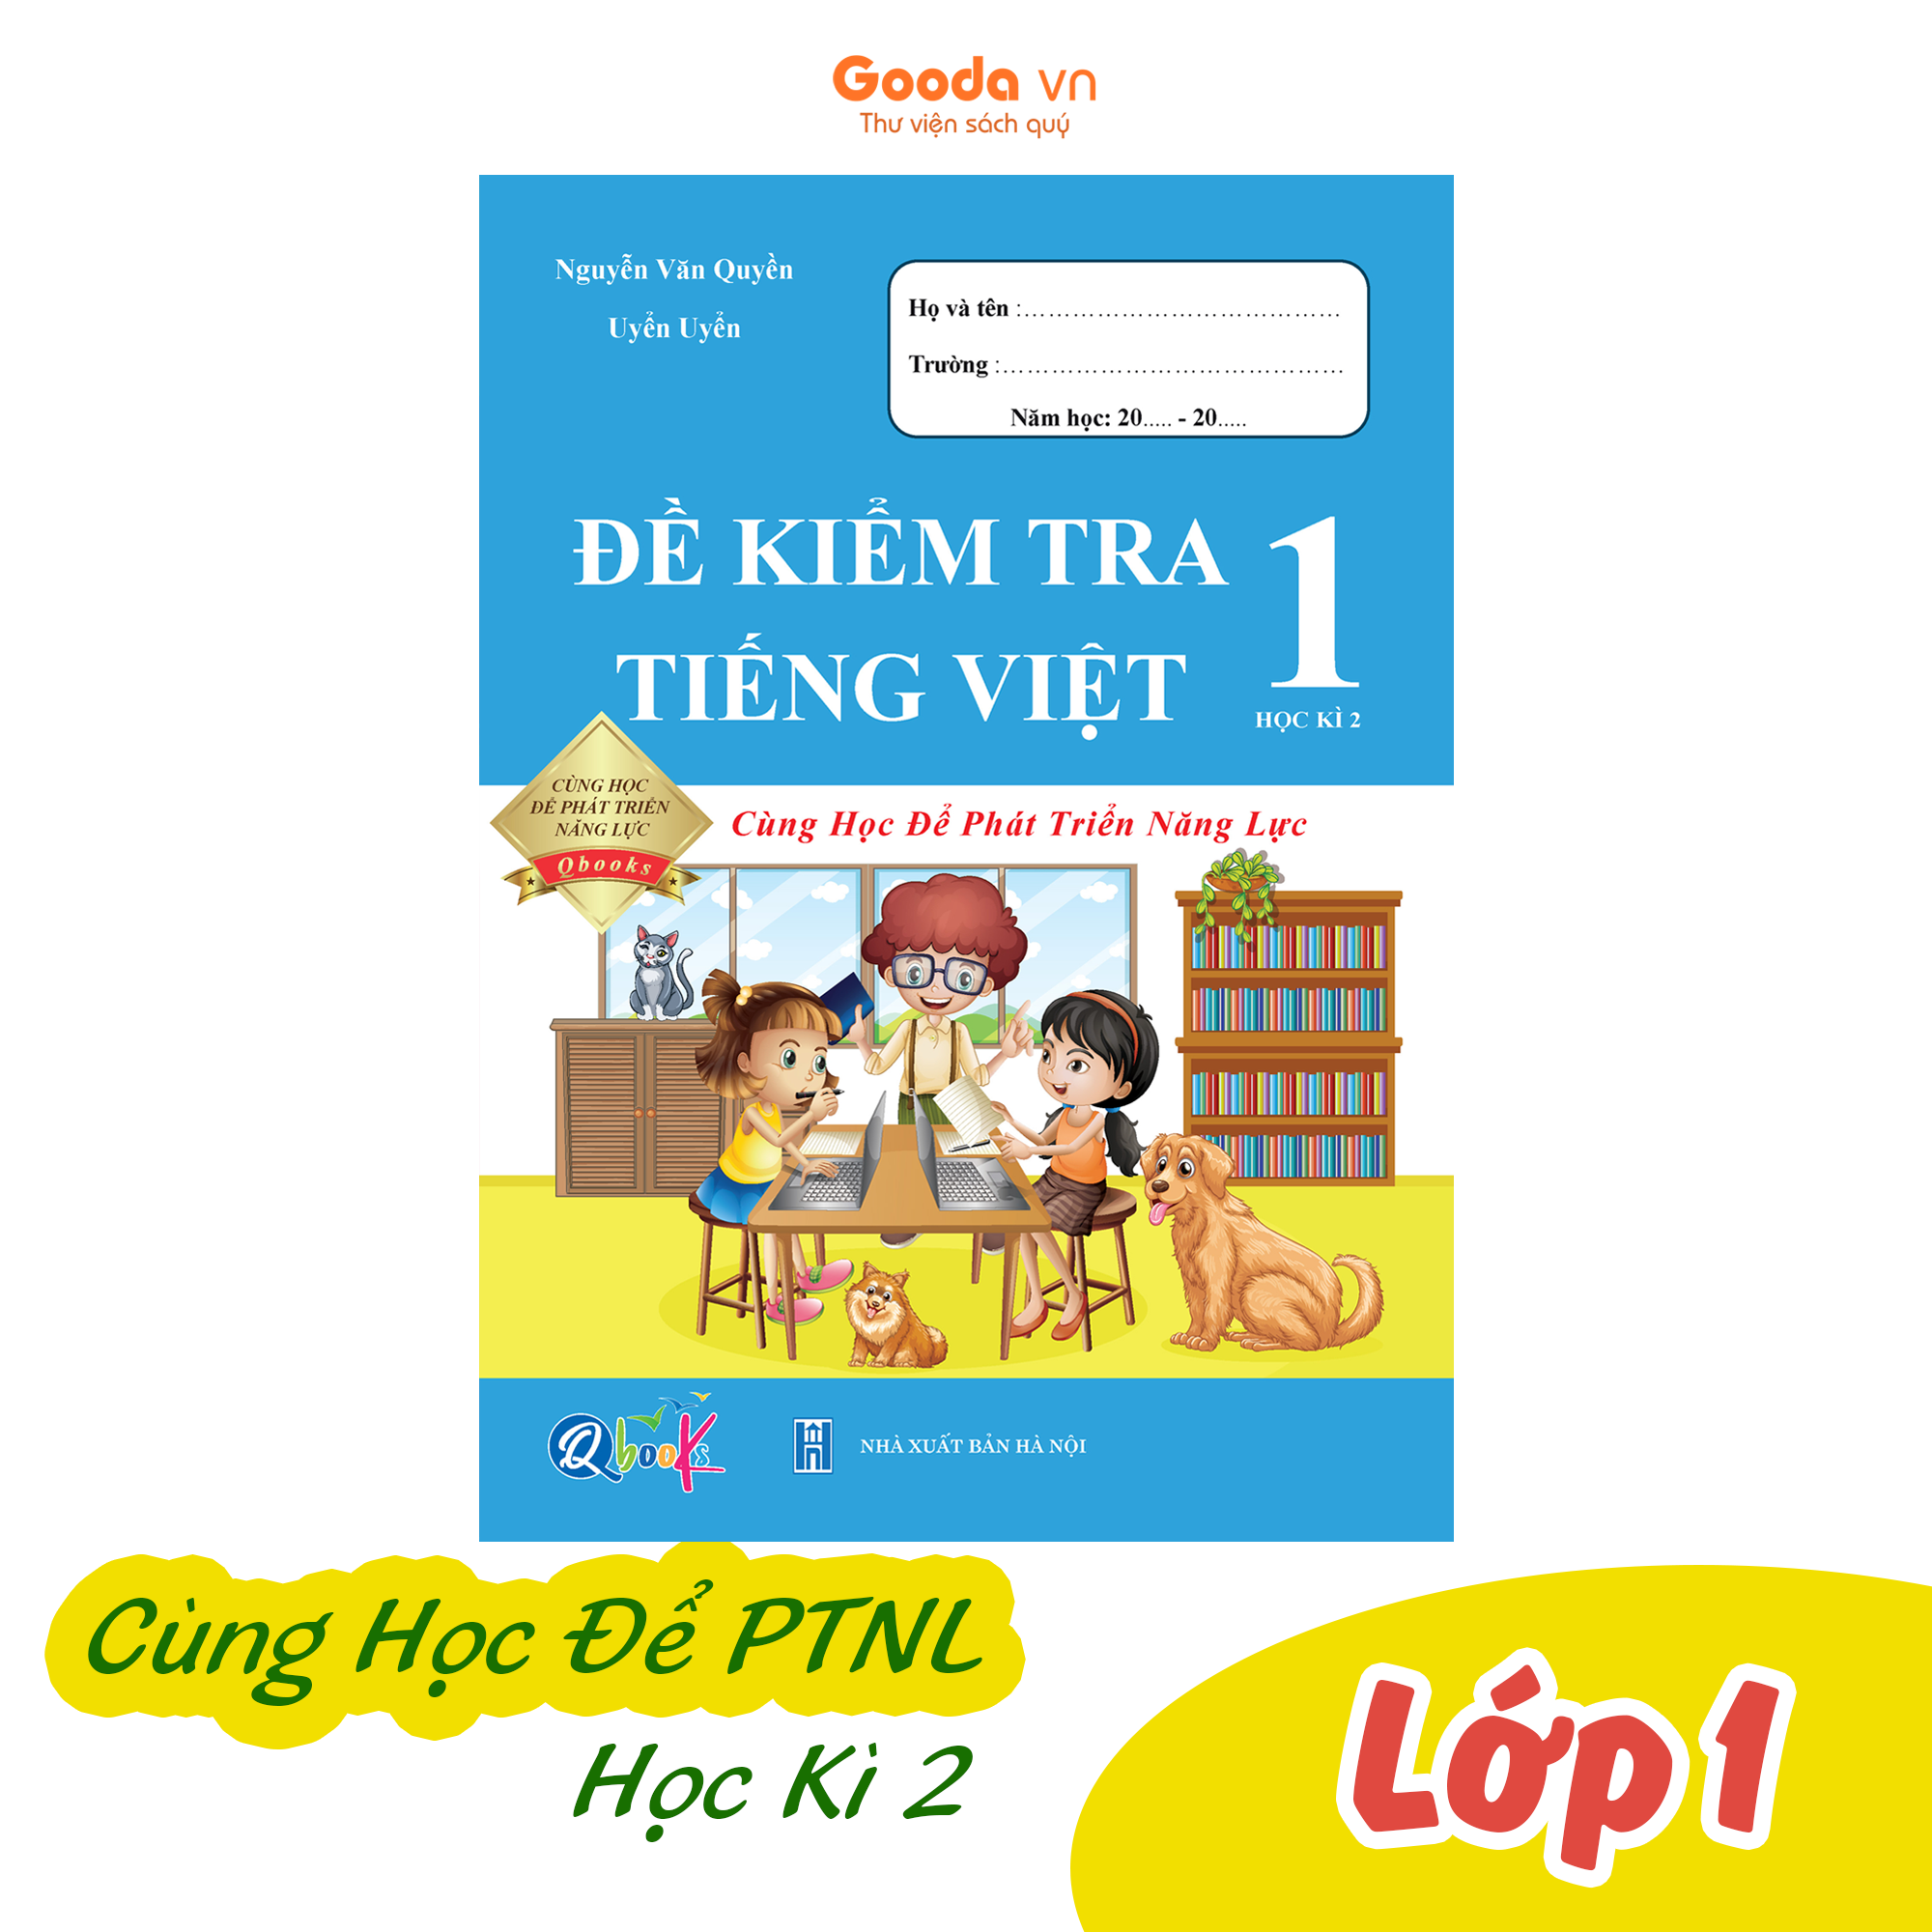 Đề Kiểm Tra Tiếng Việt Lớp 1 - Cùng Học Để Phát Triển Năng Lực - Học kì 2